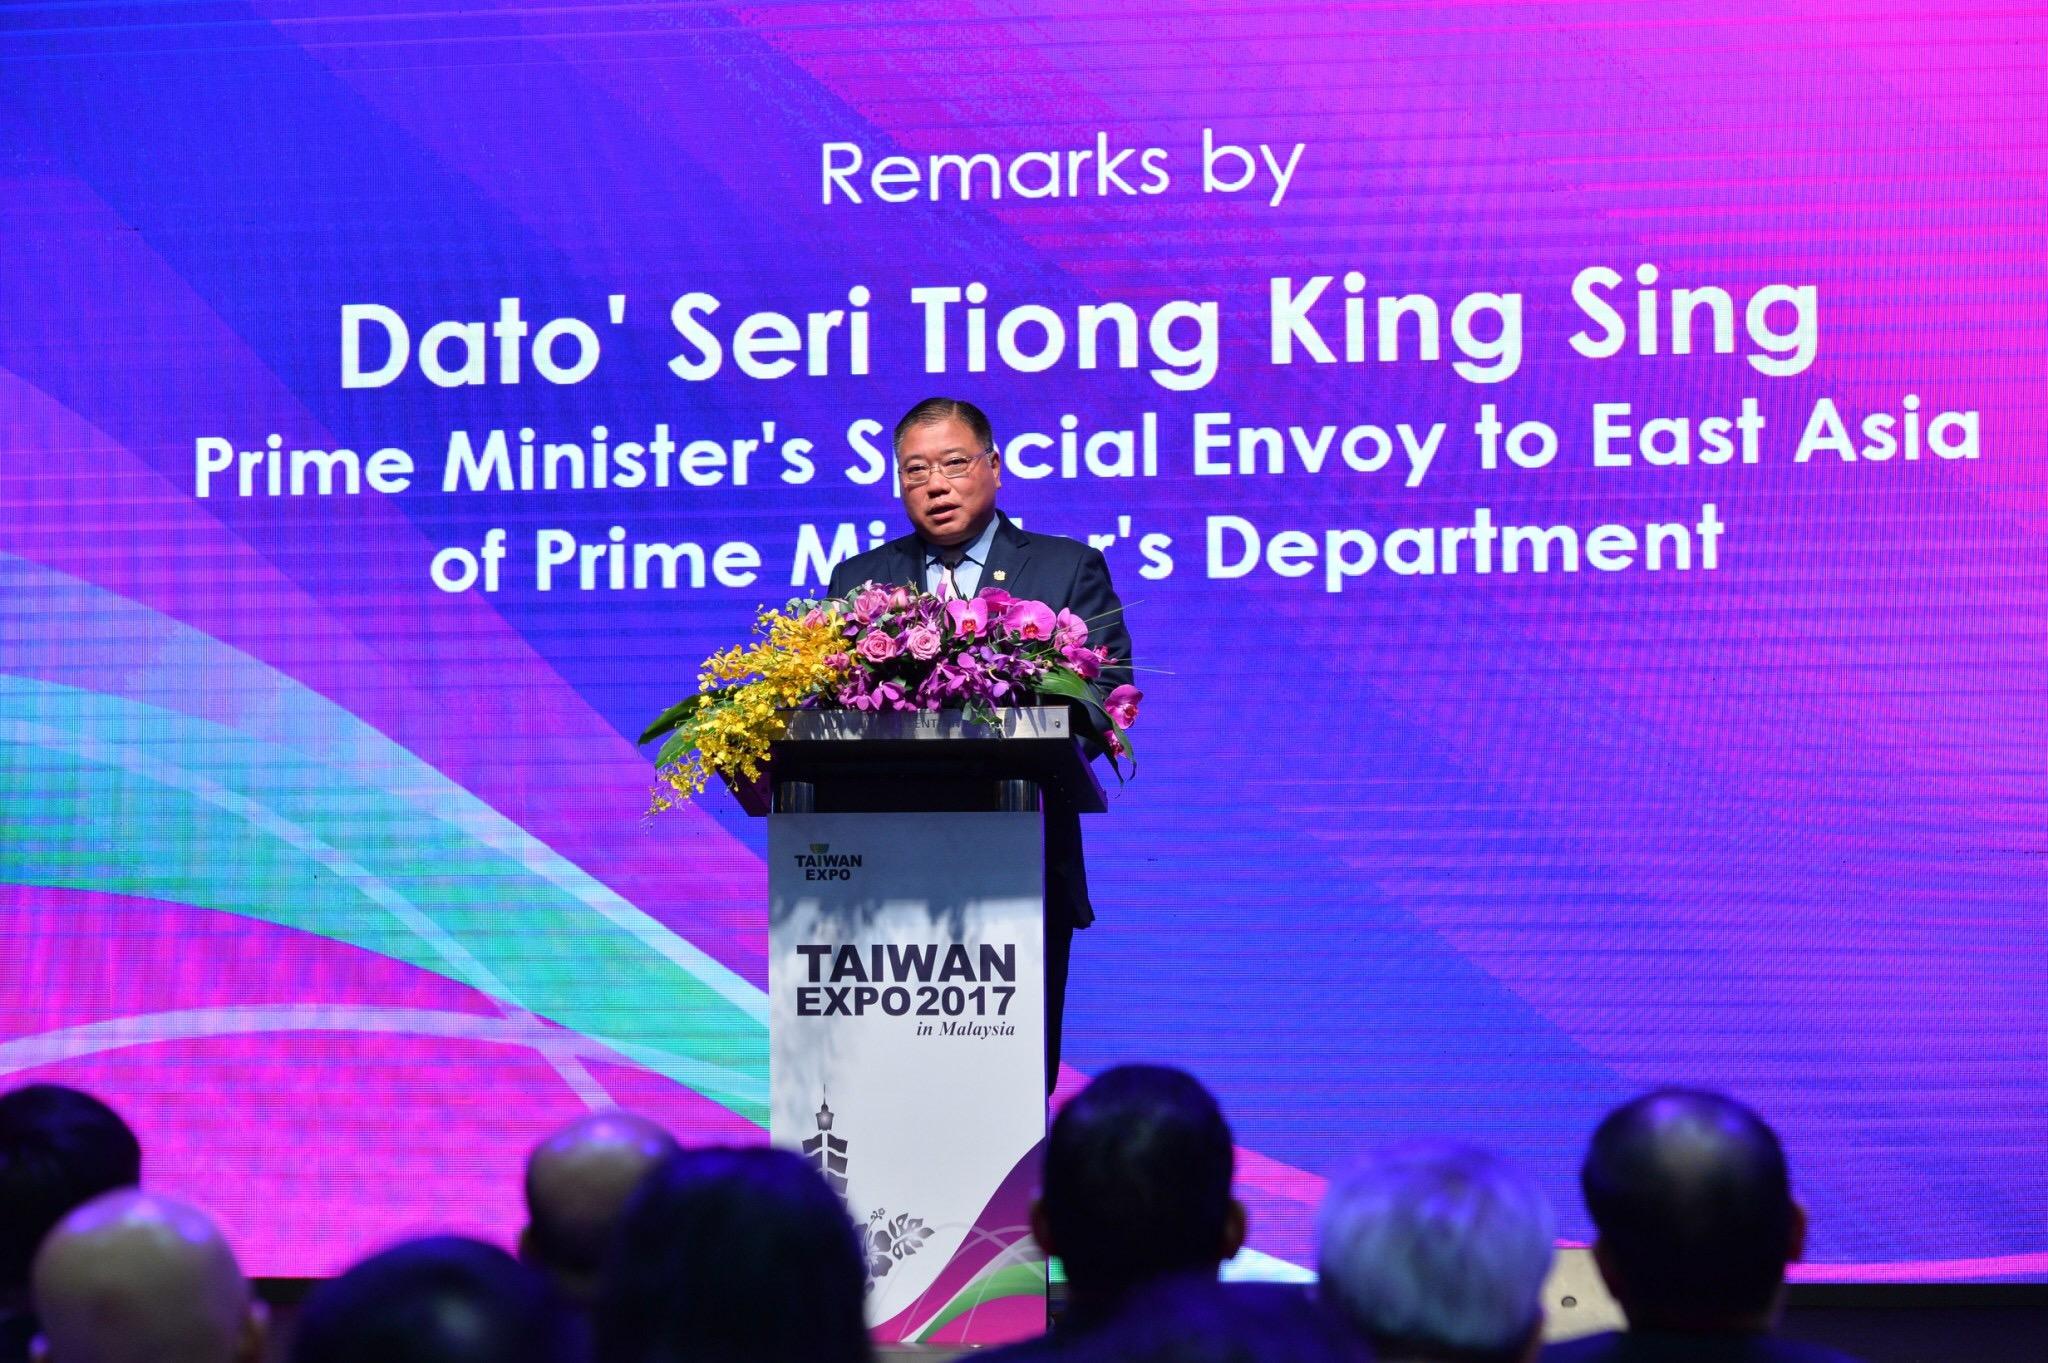 馬來西亞首相東亞特使拿督斯里張慶信致詞
